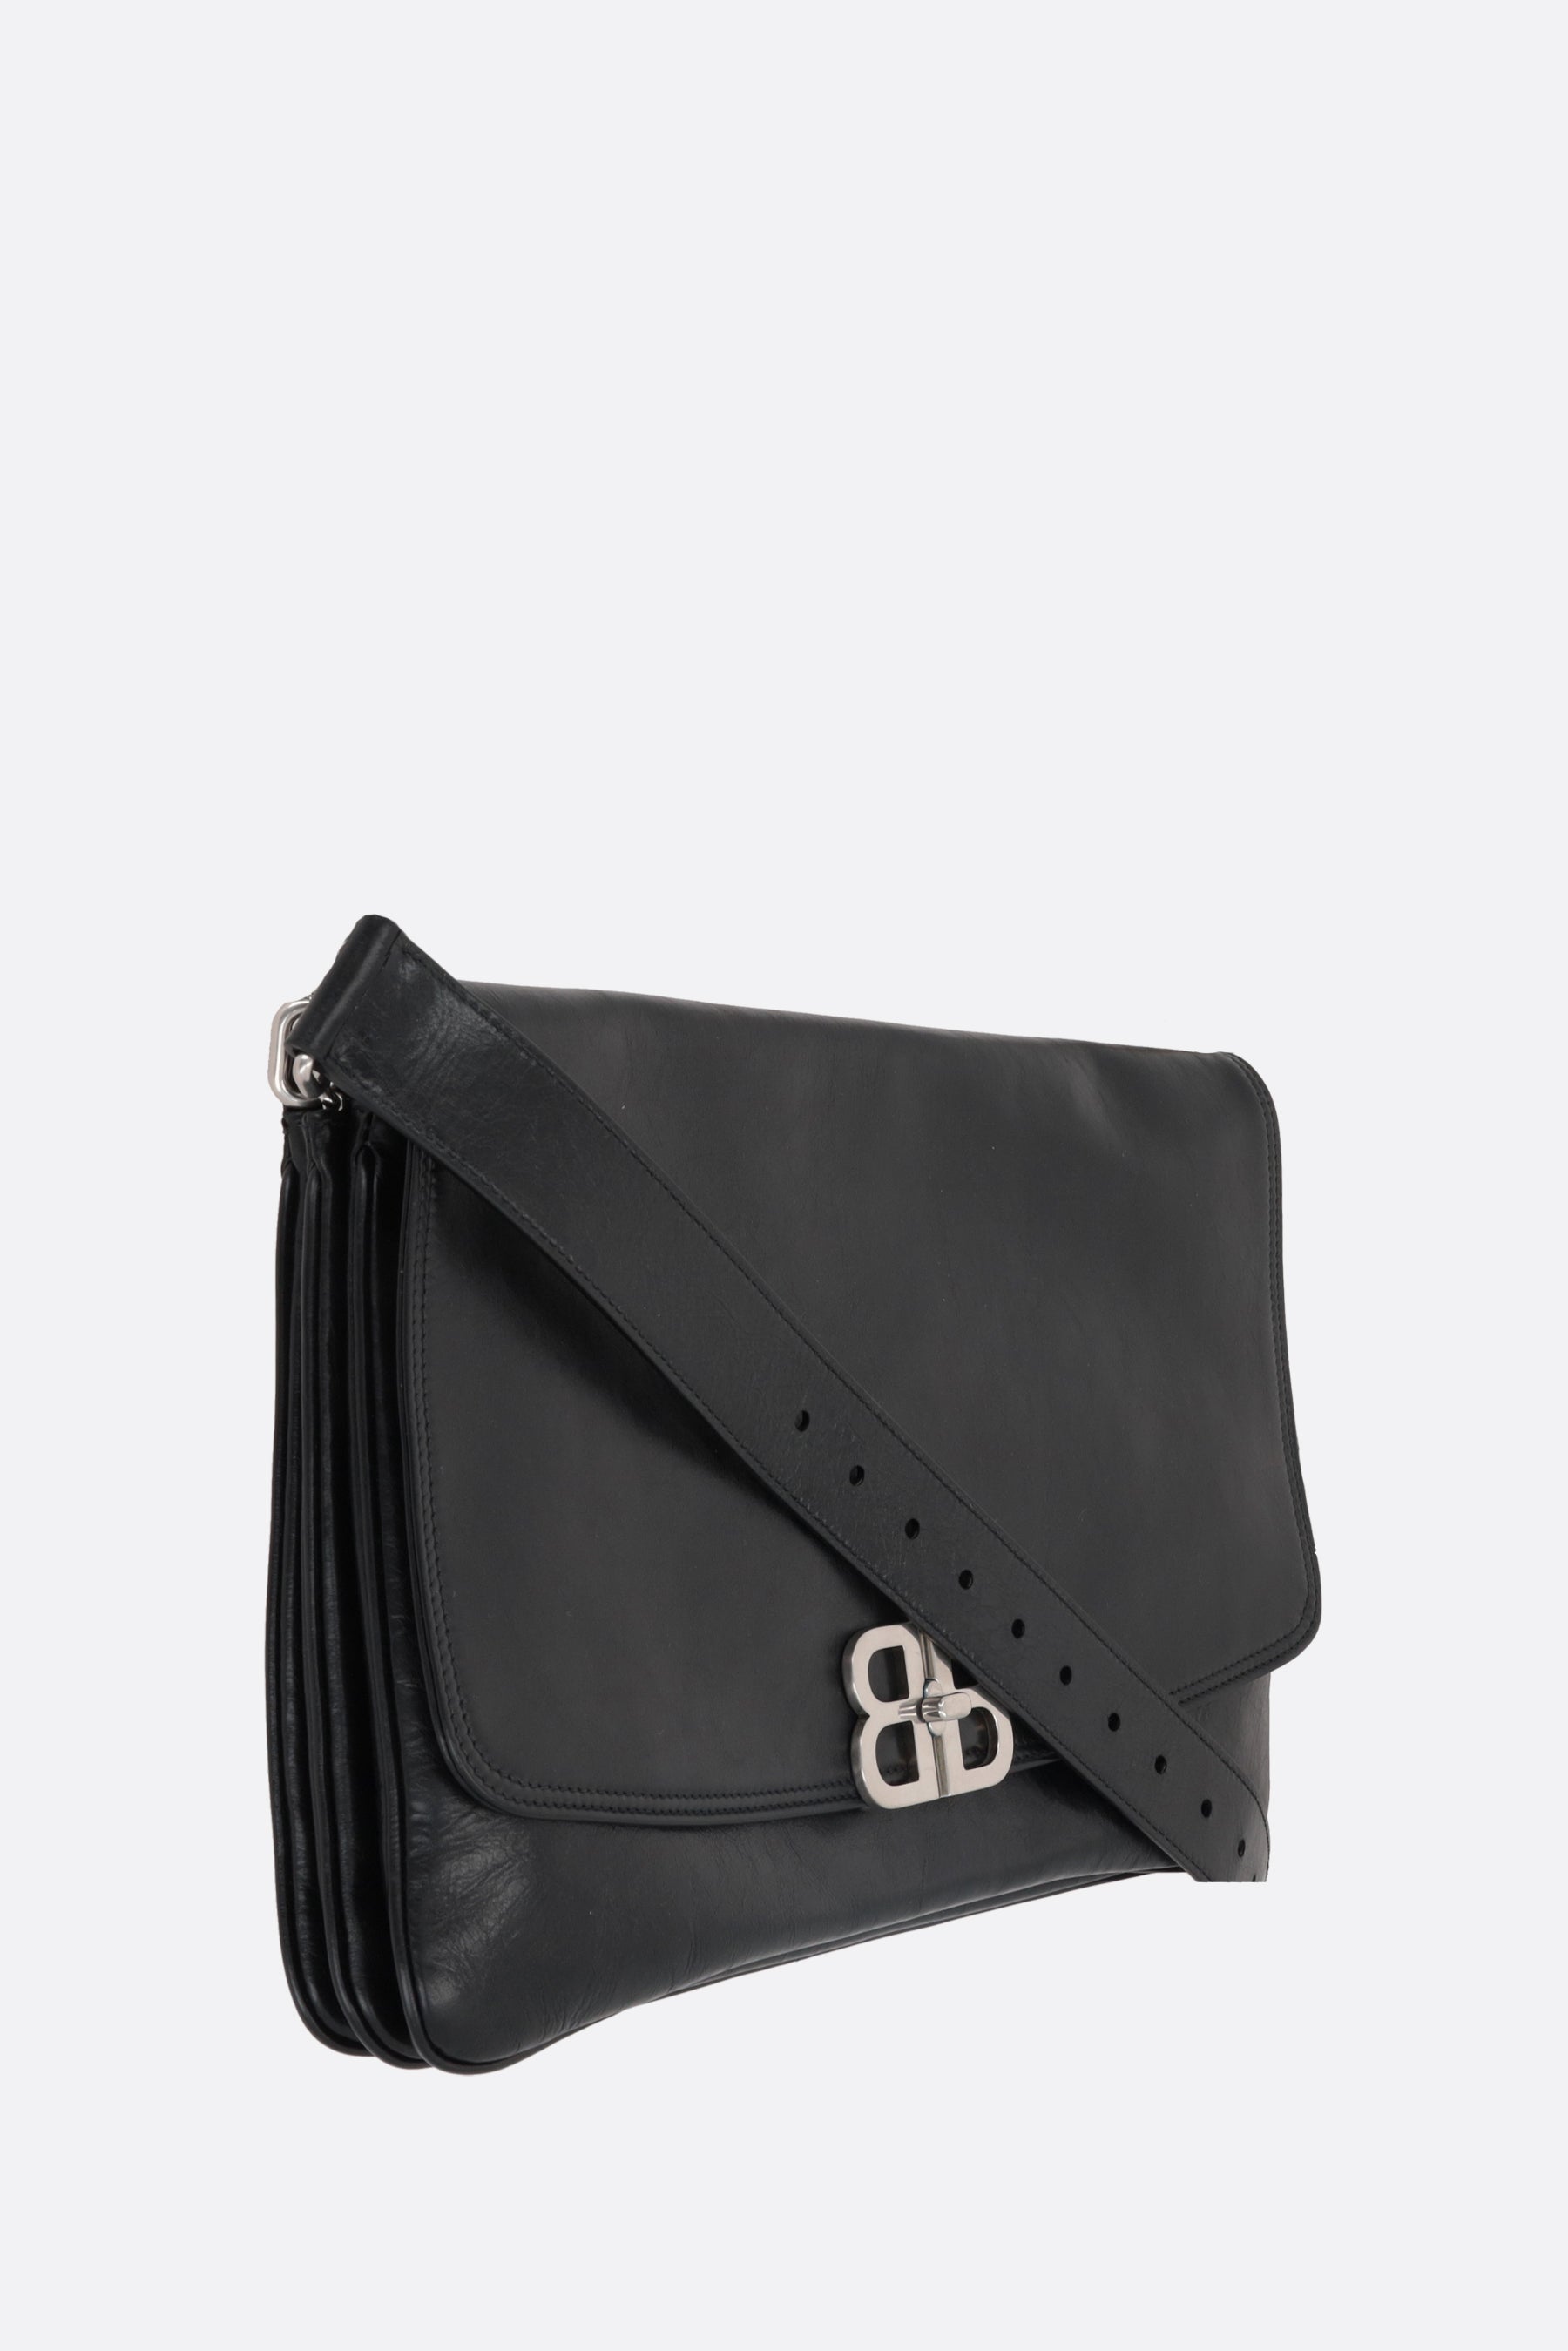 Balenciaga Flap Bag in Peach Leather